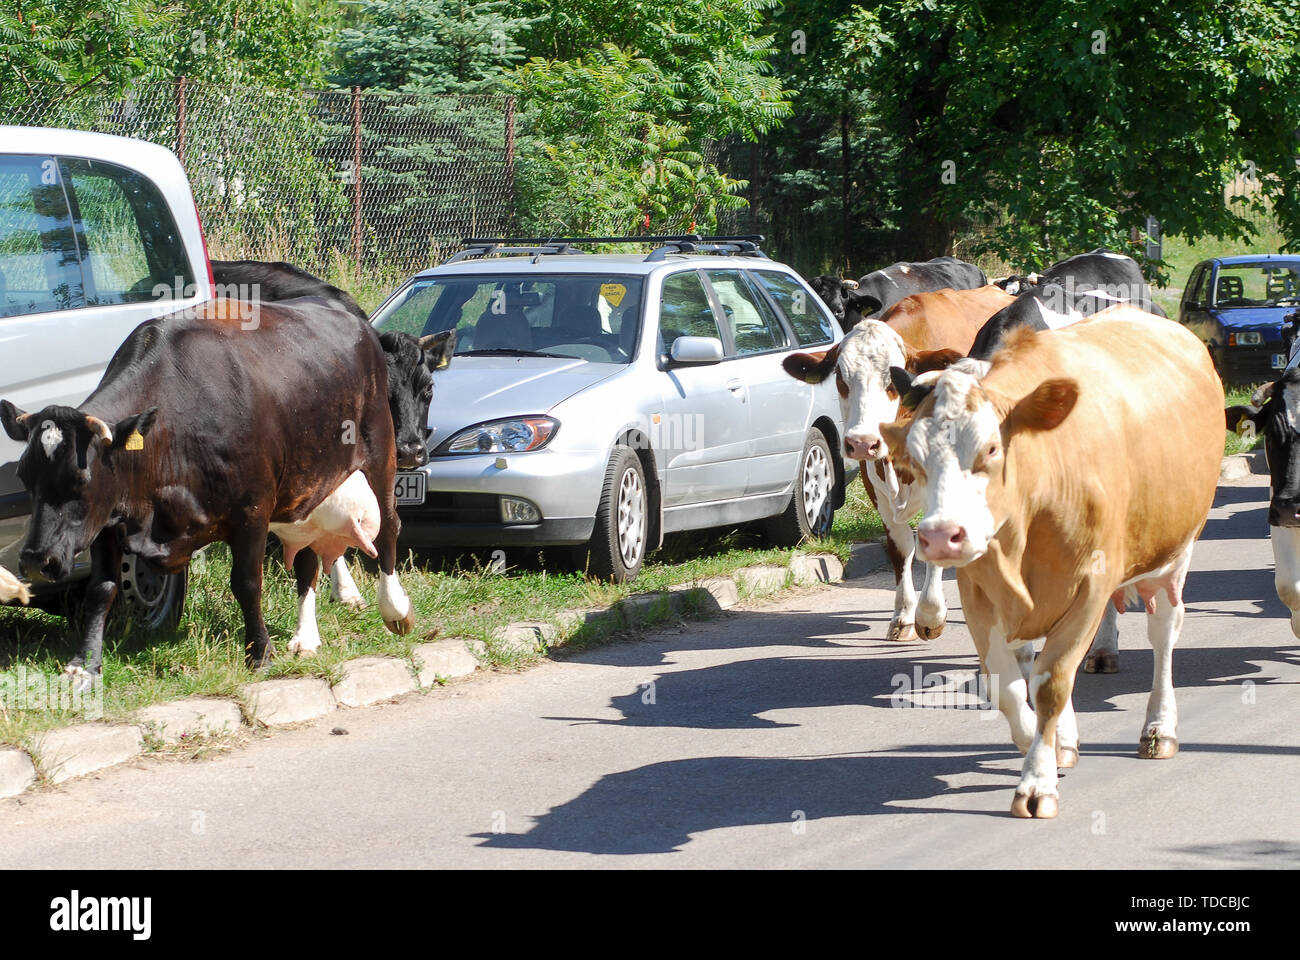 Cows in Nowe Guty, Poland. July 3rd 2019 © Wojciech Strozyk / Alamy Stock Photo Stock Photo